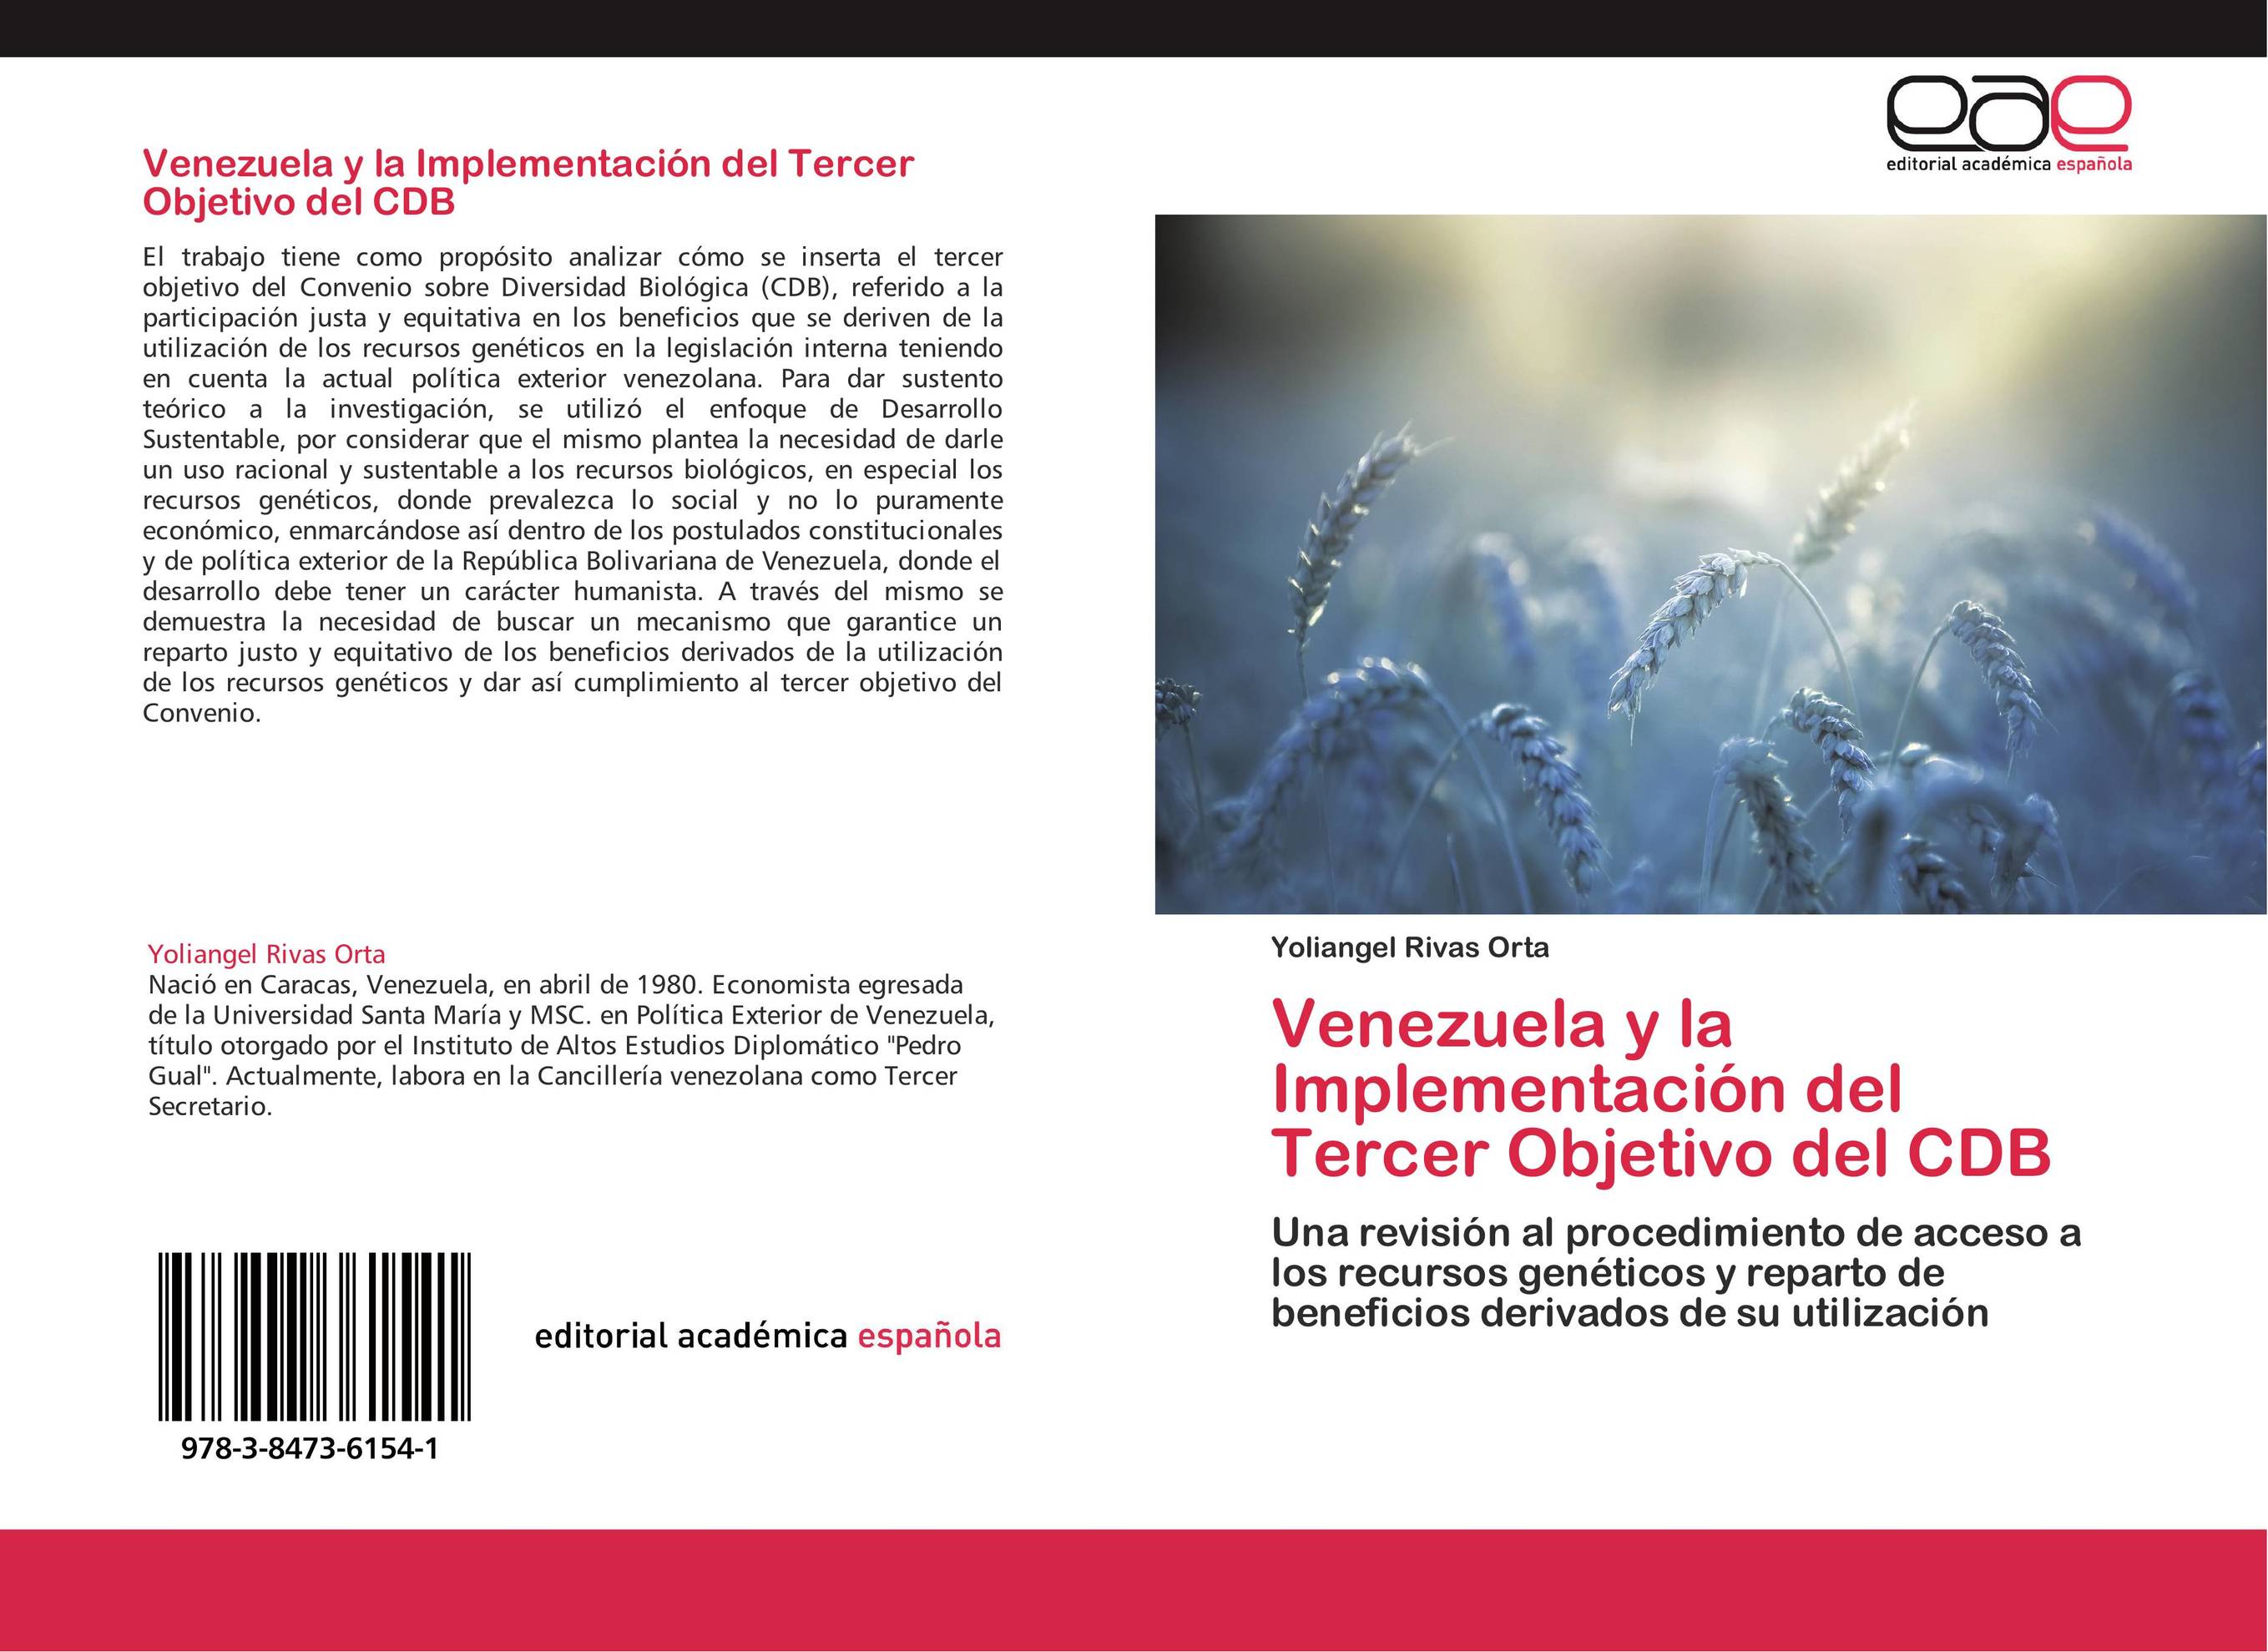 Venezuela y la Implementación del Tercer Objetivo del CDB